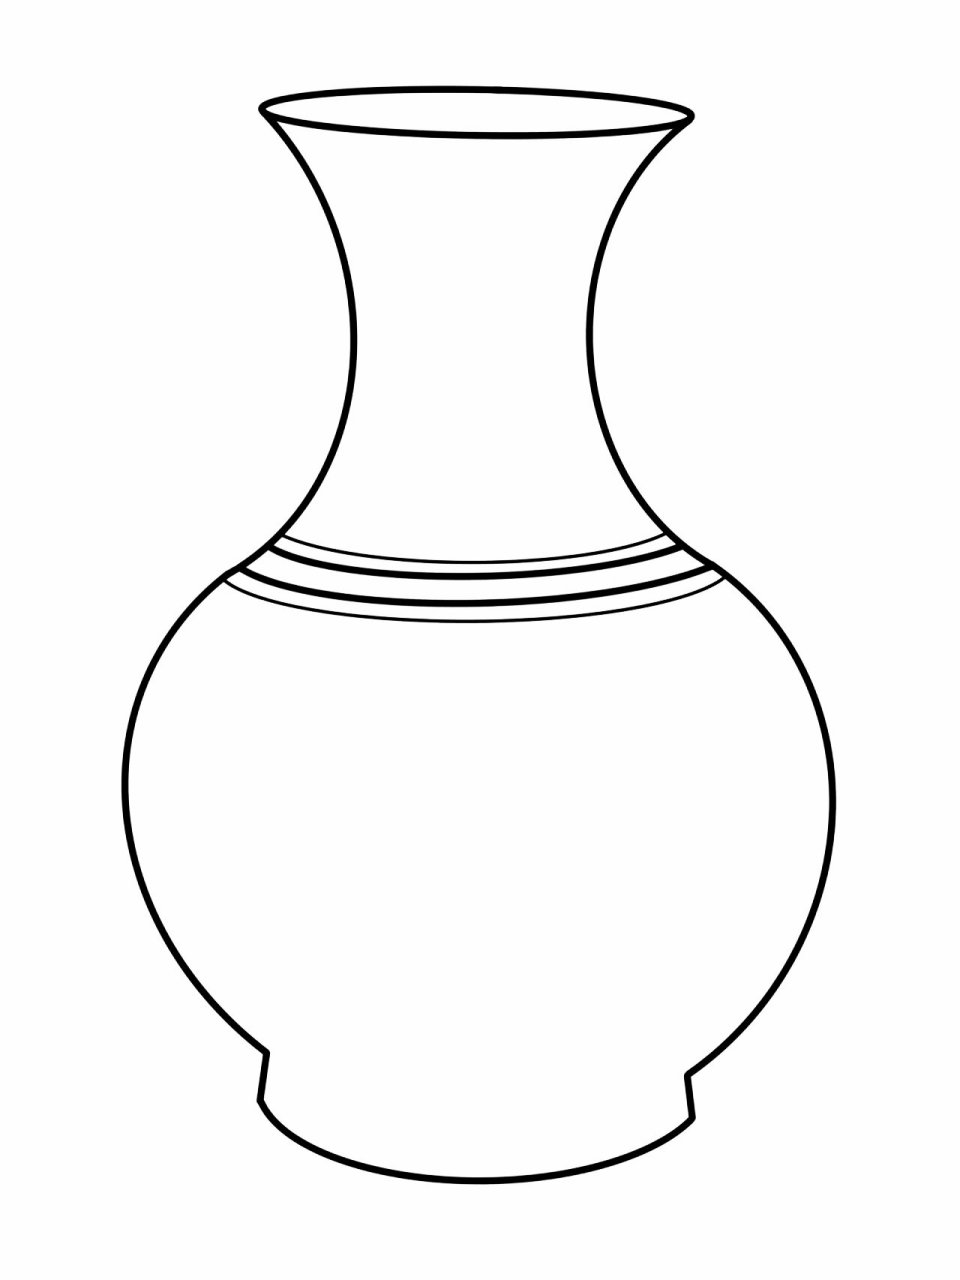 花瓶设计手绘线稿图片